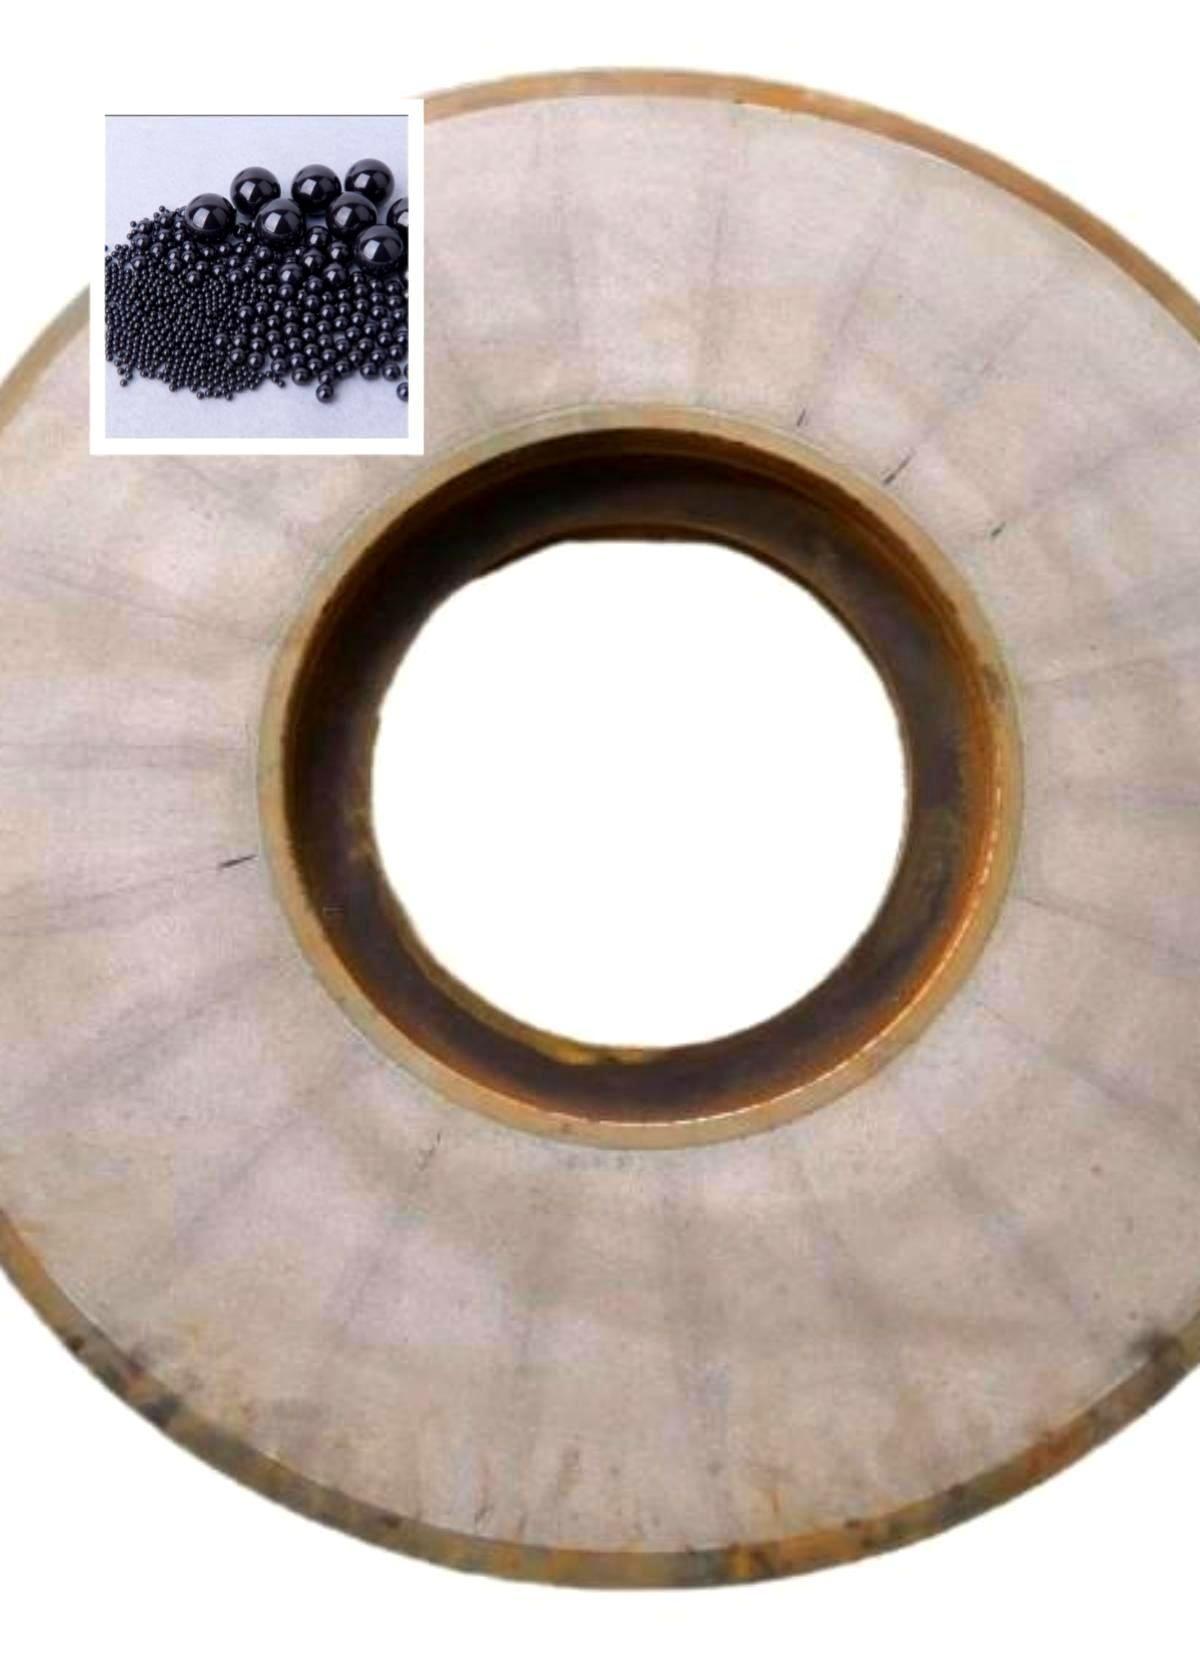  磨氮化硅陶瓷球800金刚石磨盘